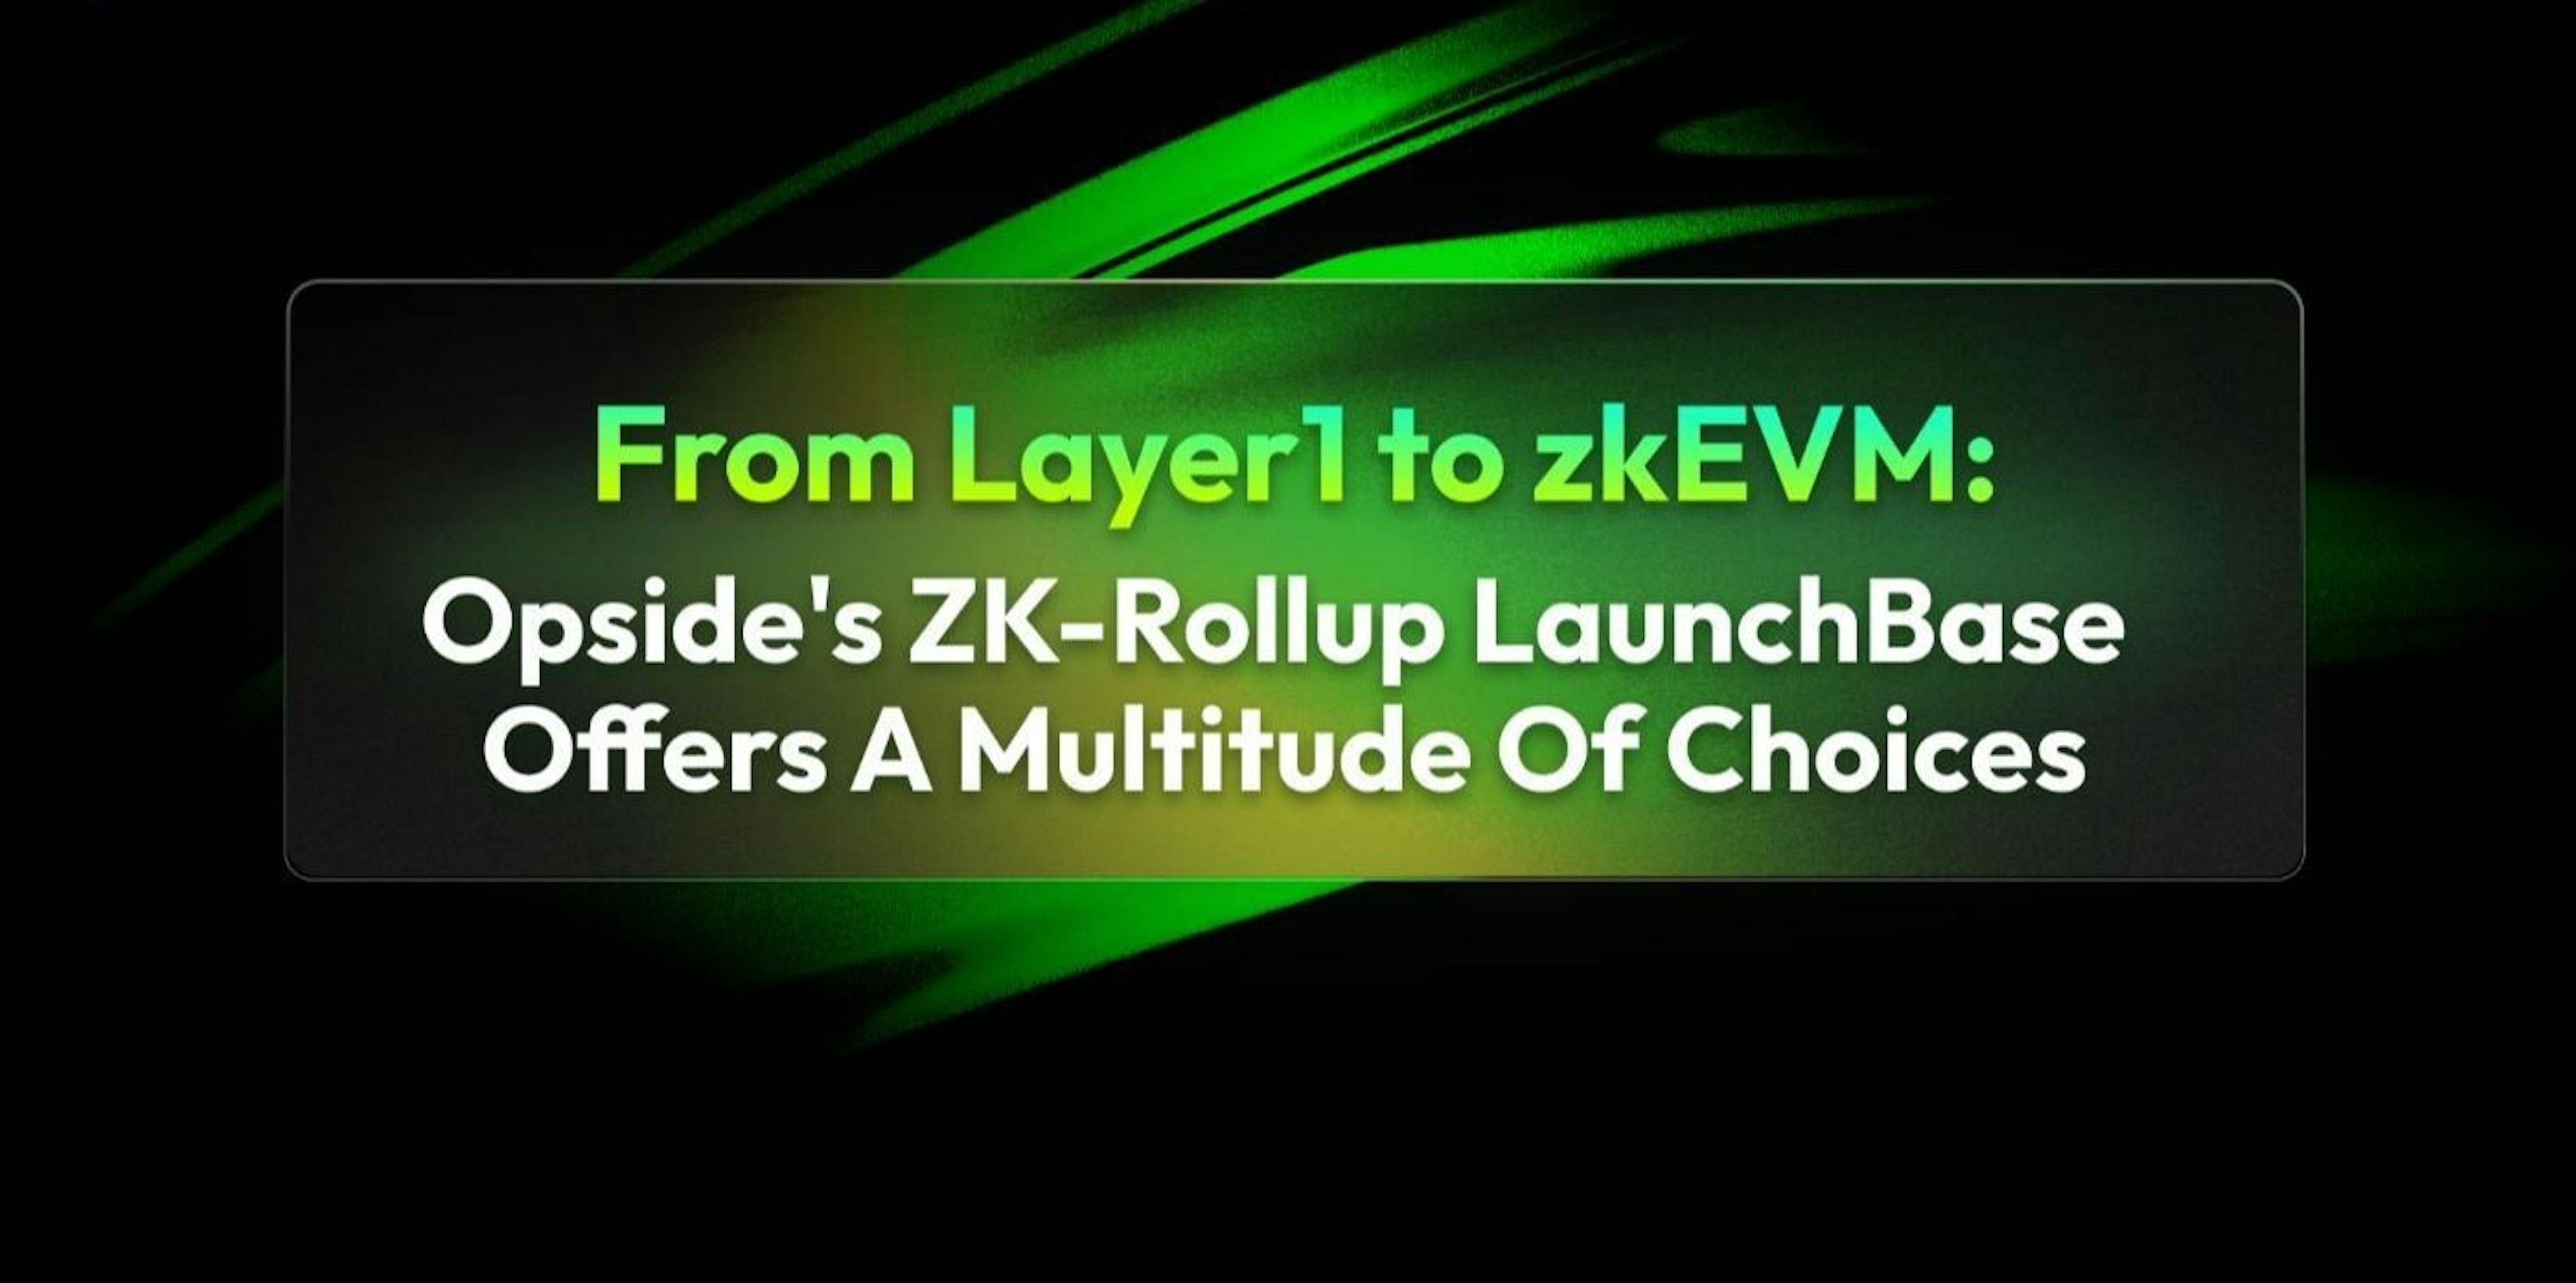 featured image - Da camada 1 ao zkEVM: o ZK-Rollup LaunchBase da Opside está oferecendo uma infinidade de opções